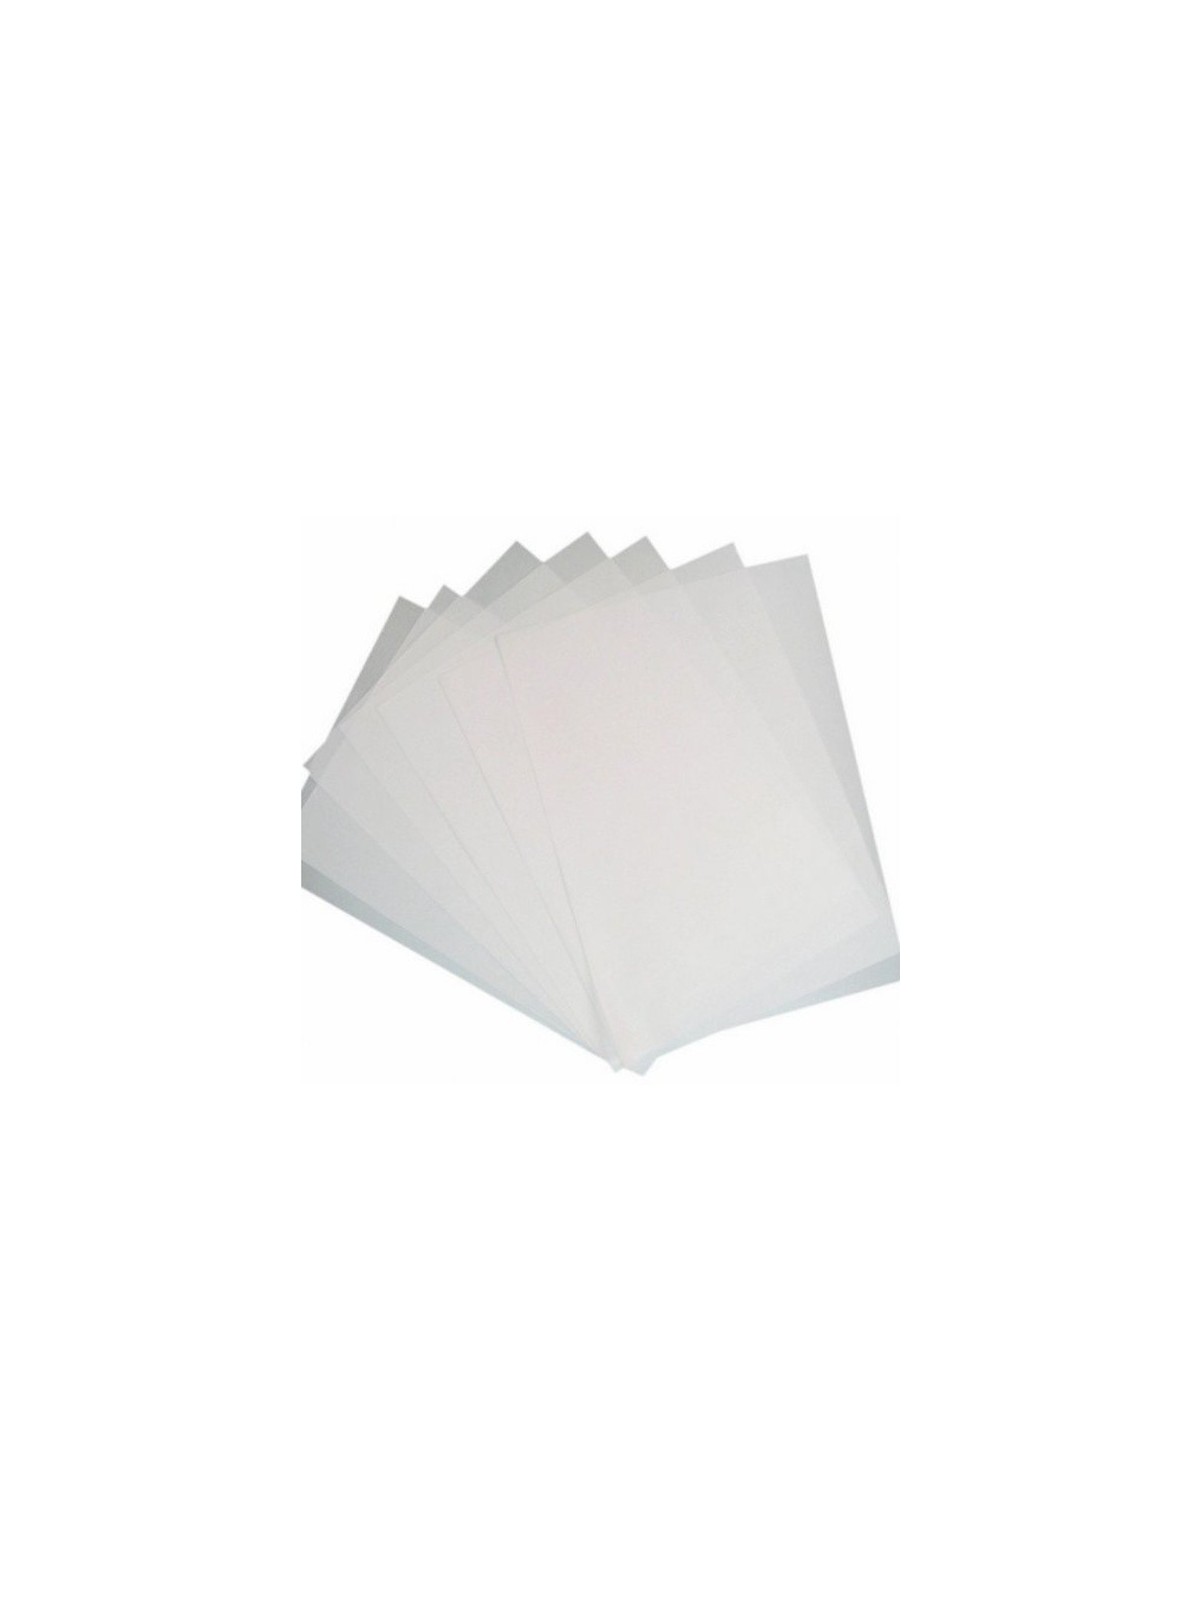 A4 Edible paper clean - white - 0,5mm - 2pcs